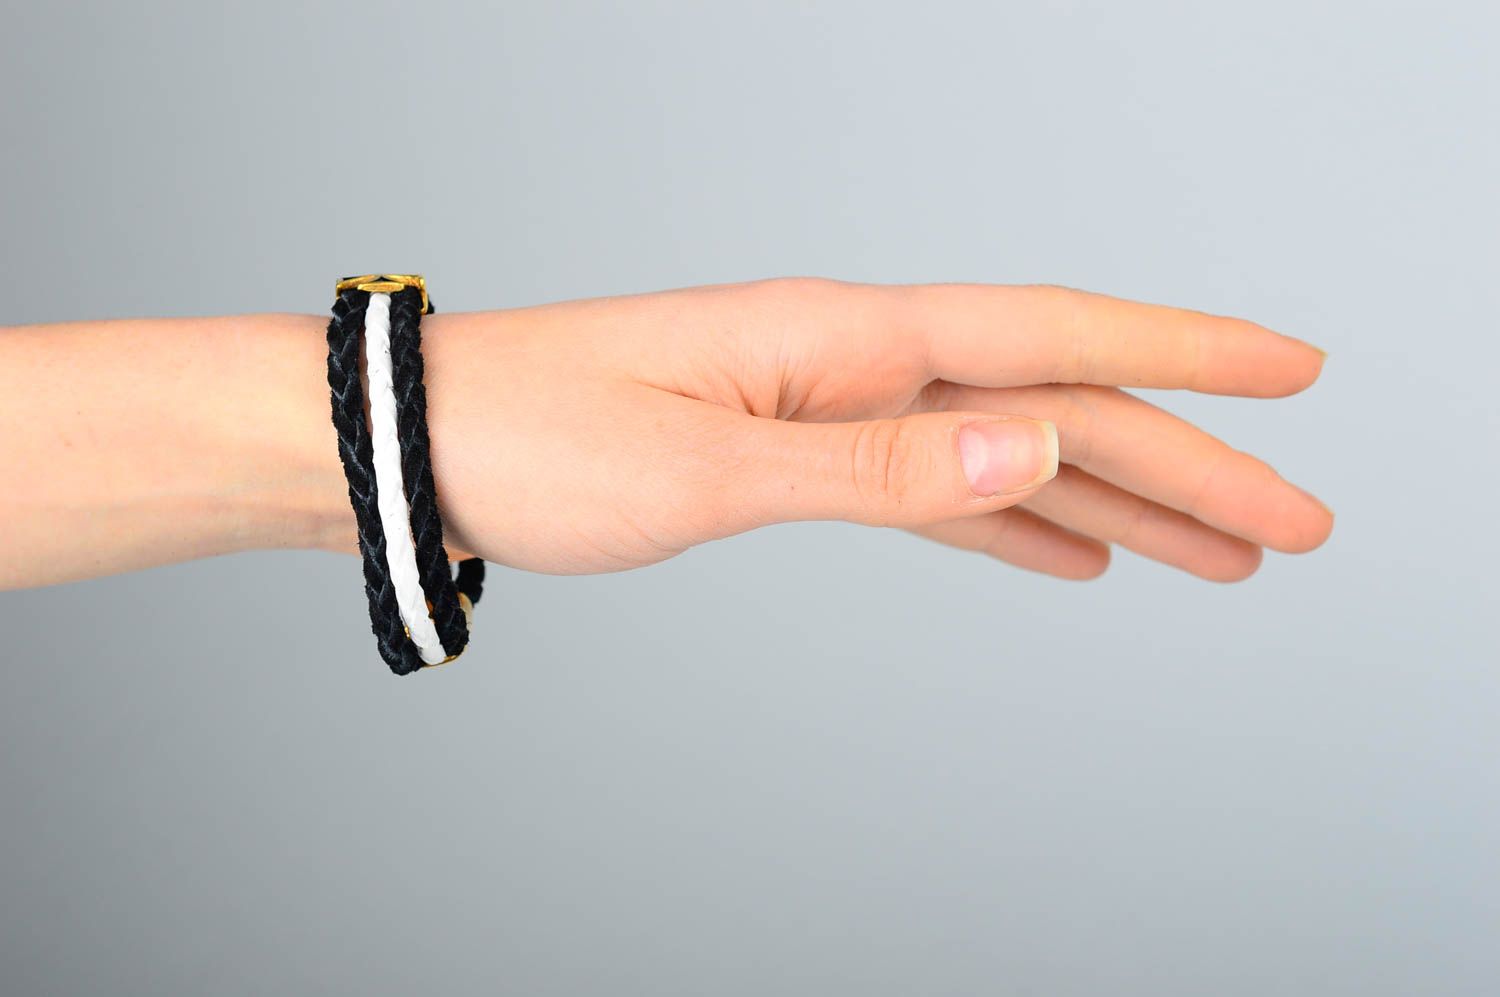 Кожаный браслет хэнд мэйд браслет на руку необычный плетеный украшение из кожи фото 1